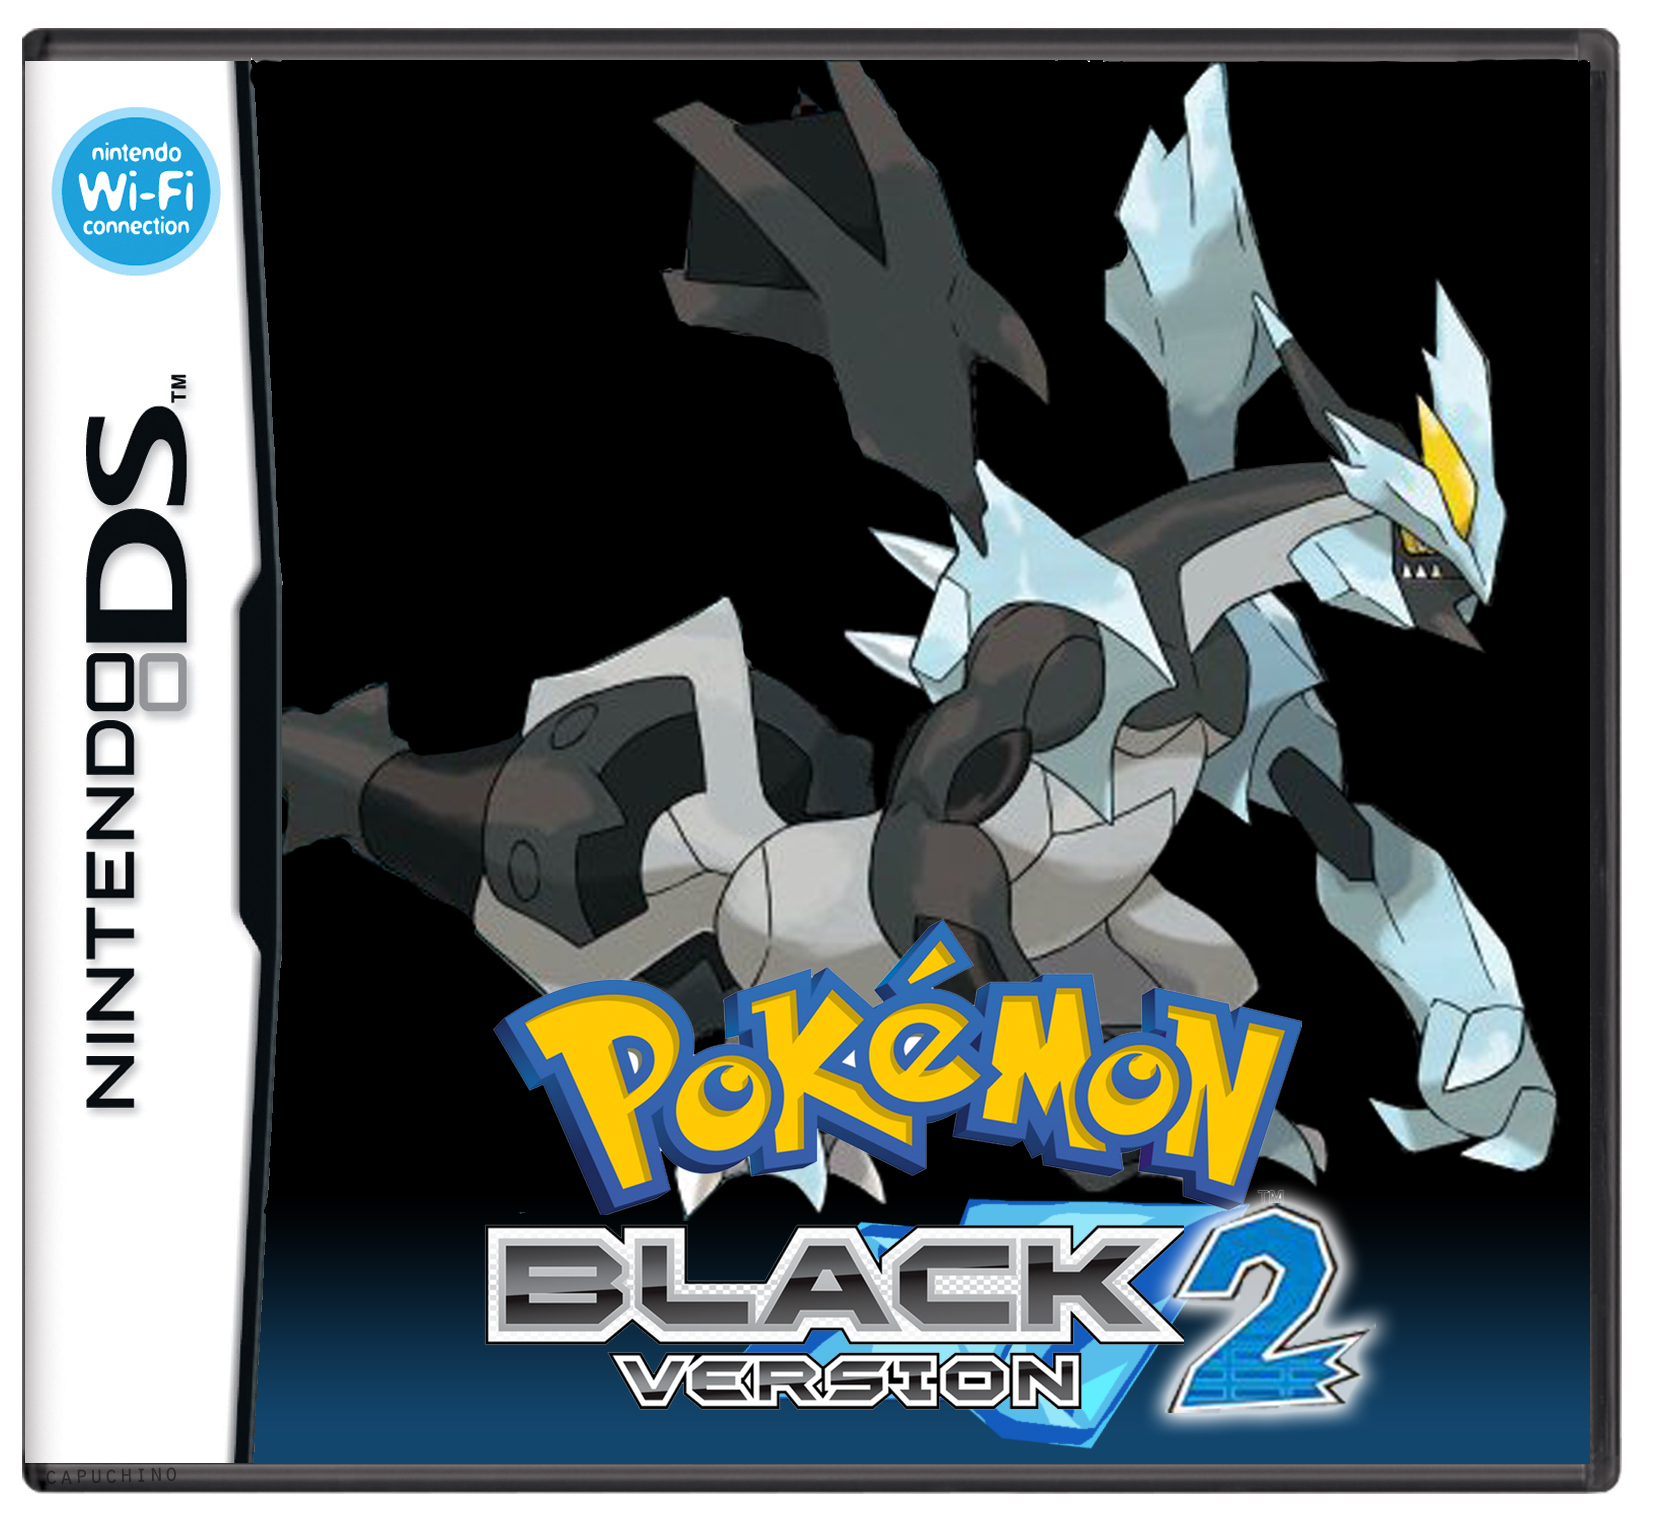 Matéria Especial: Pokémon Black 2 & Pokémon White 2! - Página 2 Pokemon_black_2_box_art